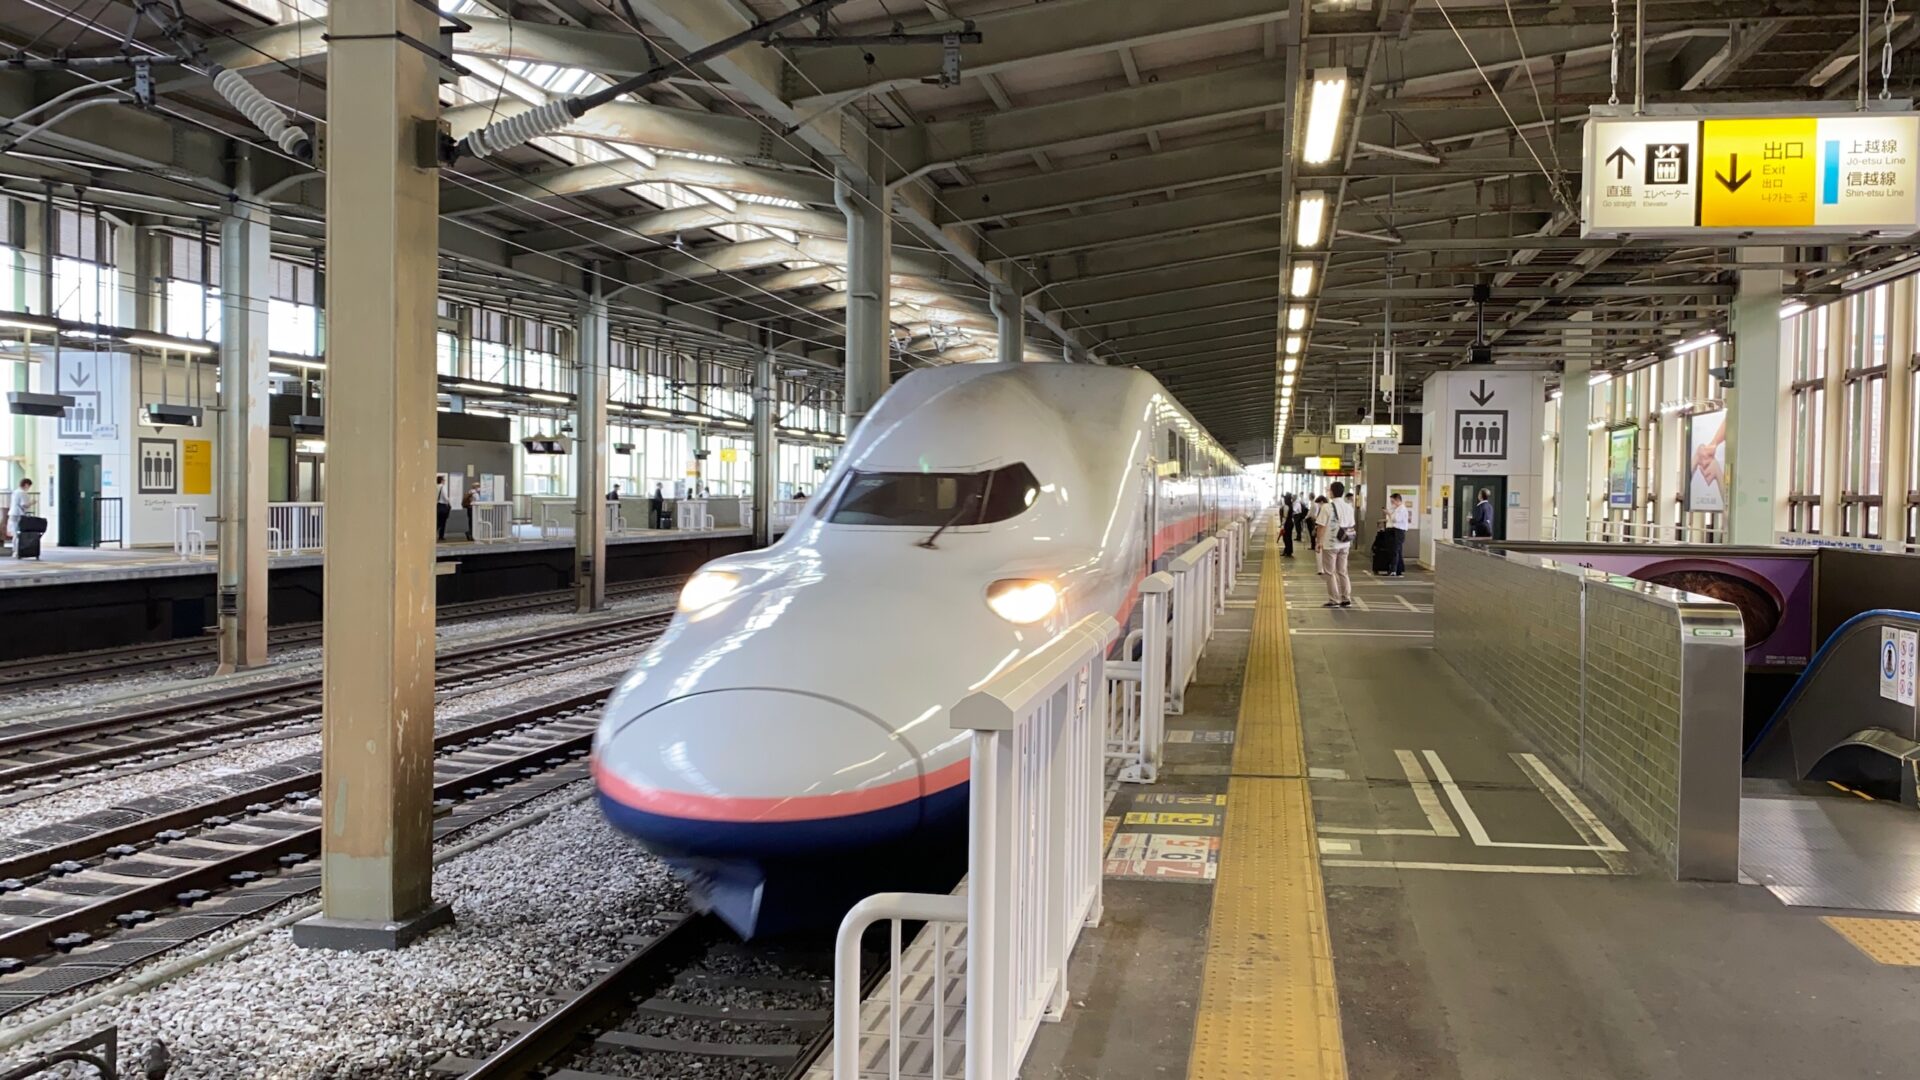 上越新幹線の自由席は、特に越後湯沢〜新潟では空席が多い